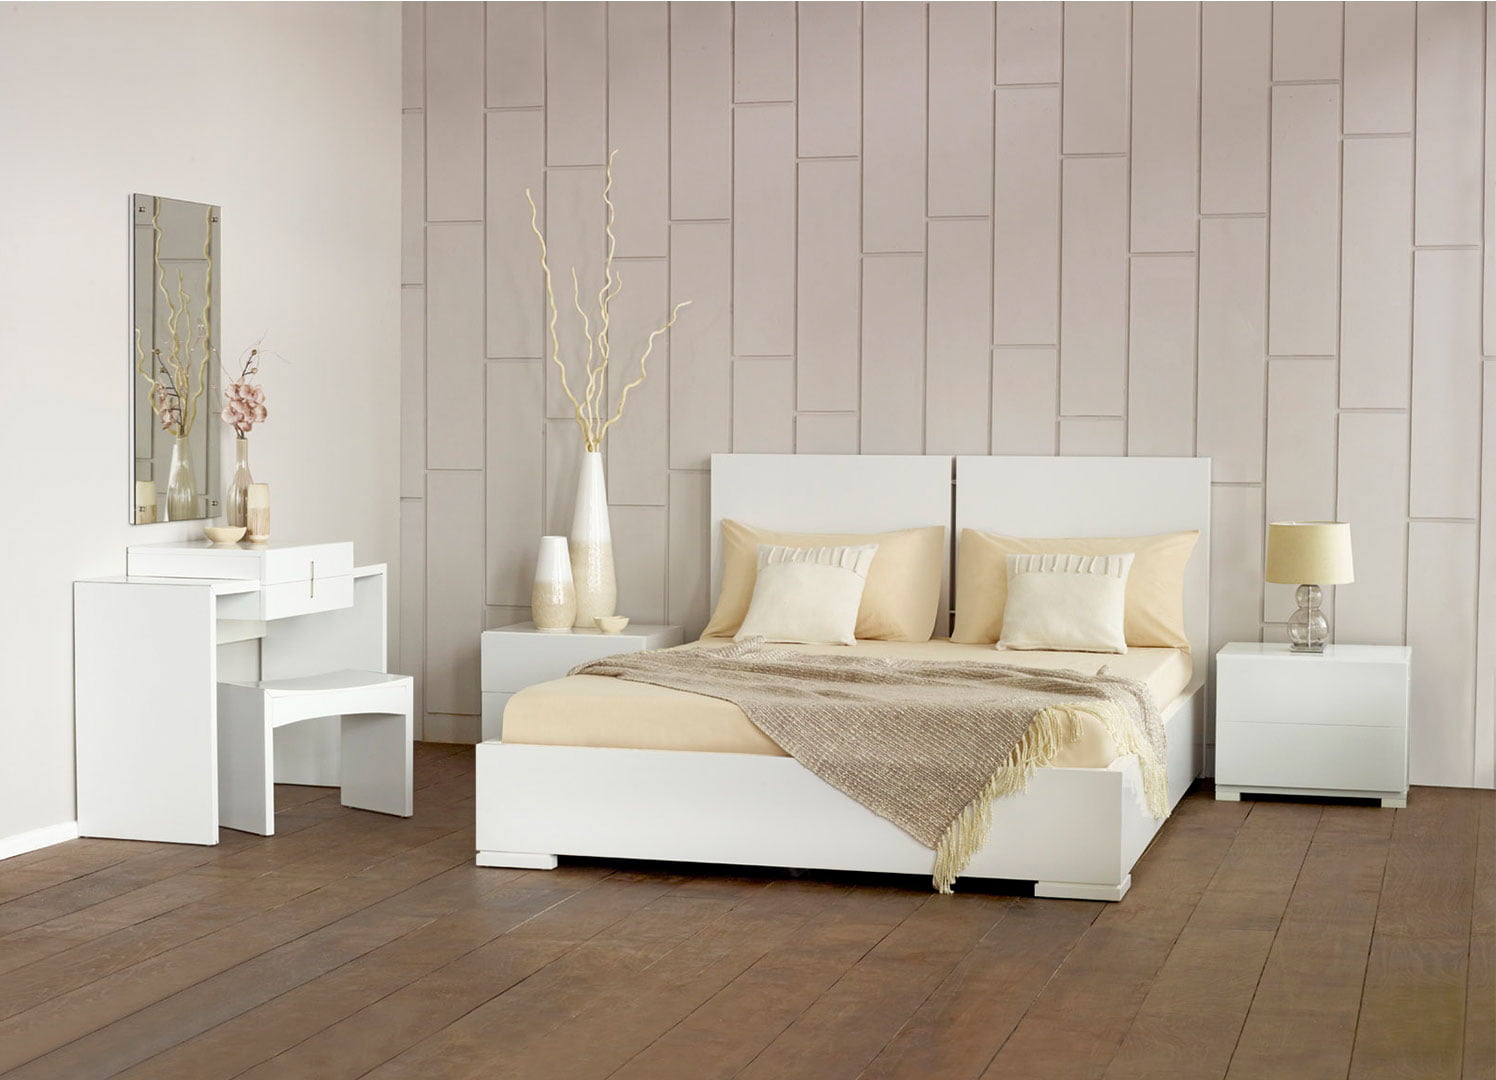 White bedroom design idea